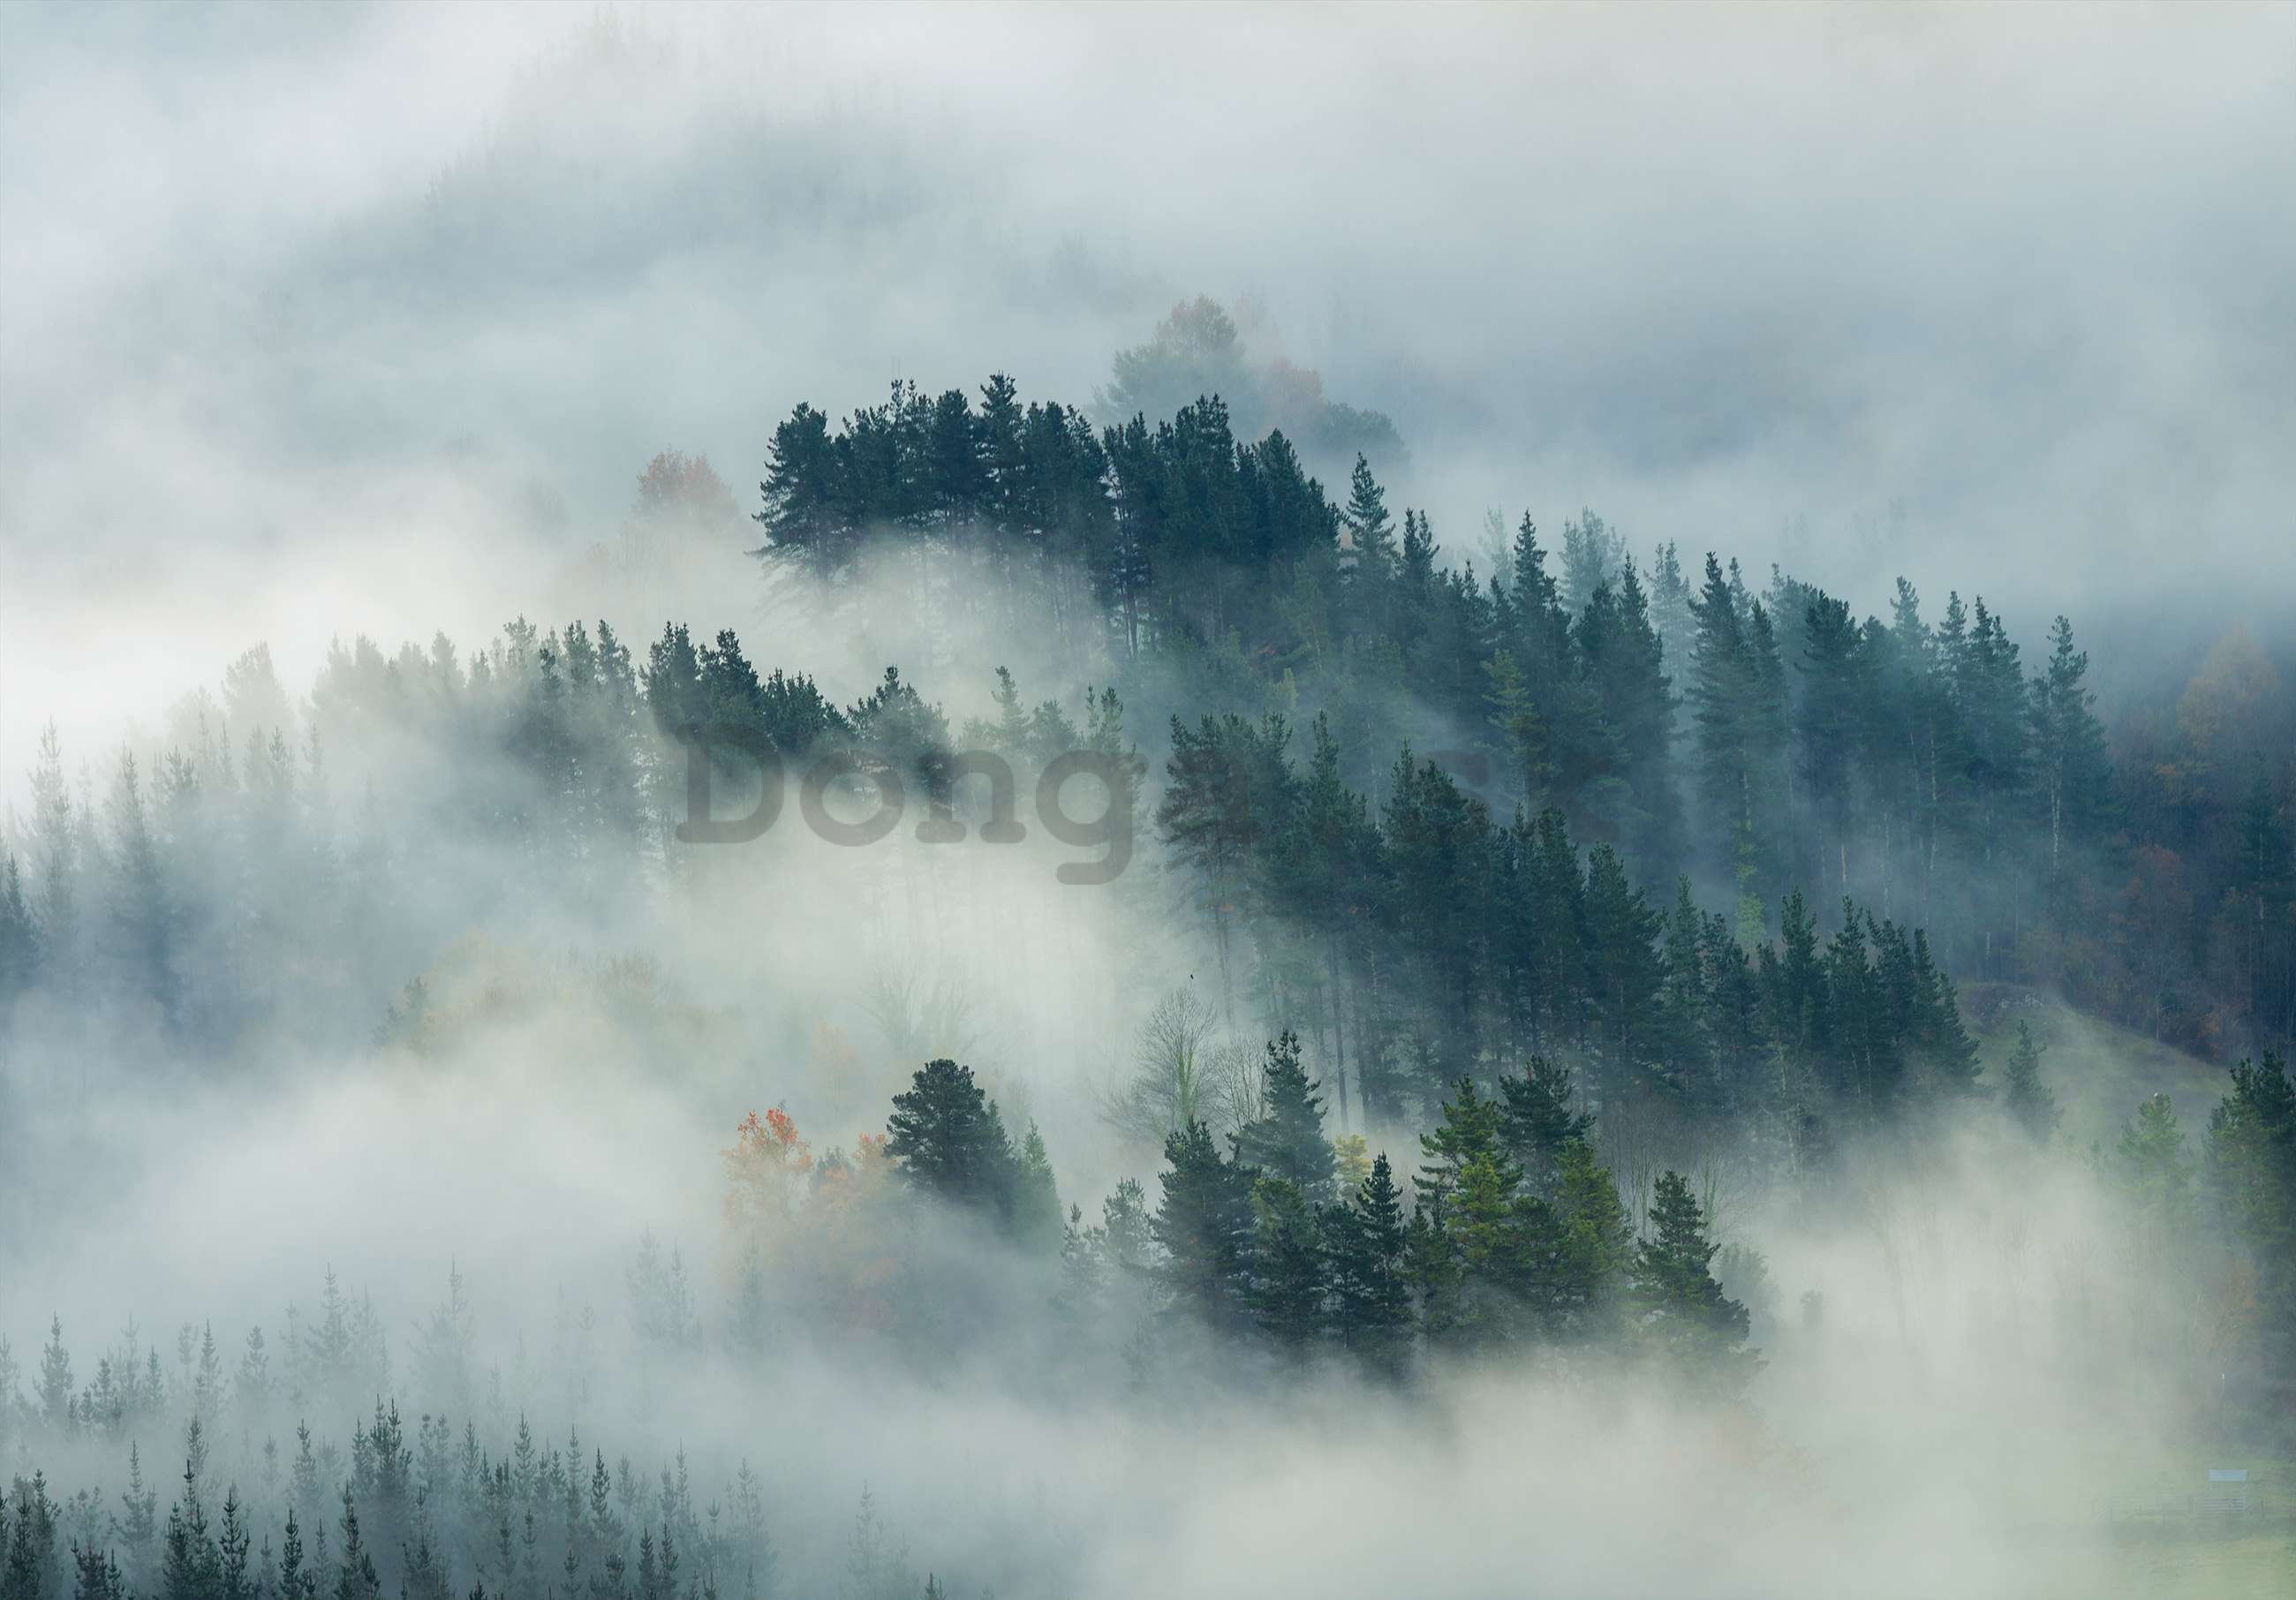 Fototapeta vliesová: Hmla nad lesom (4) - 254x184 cm